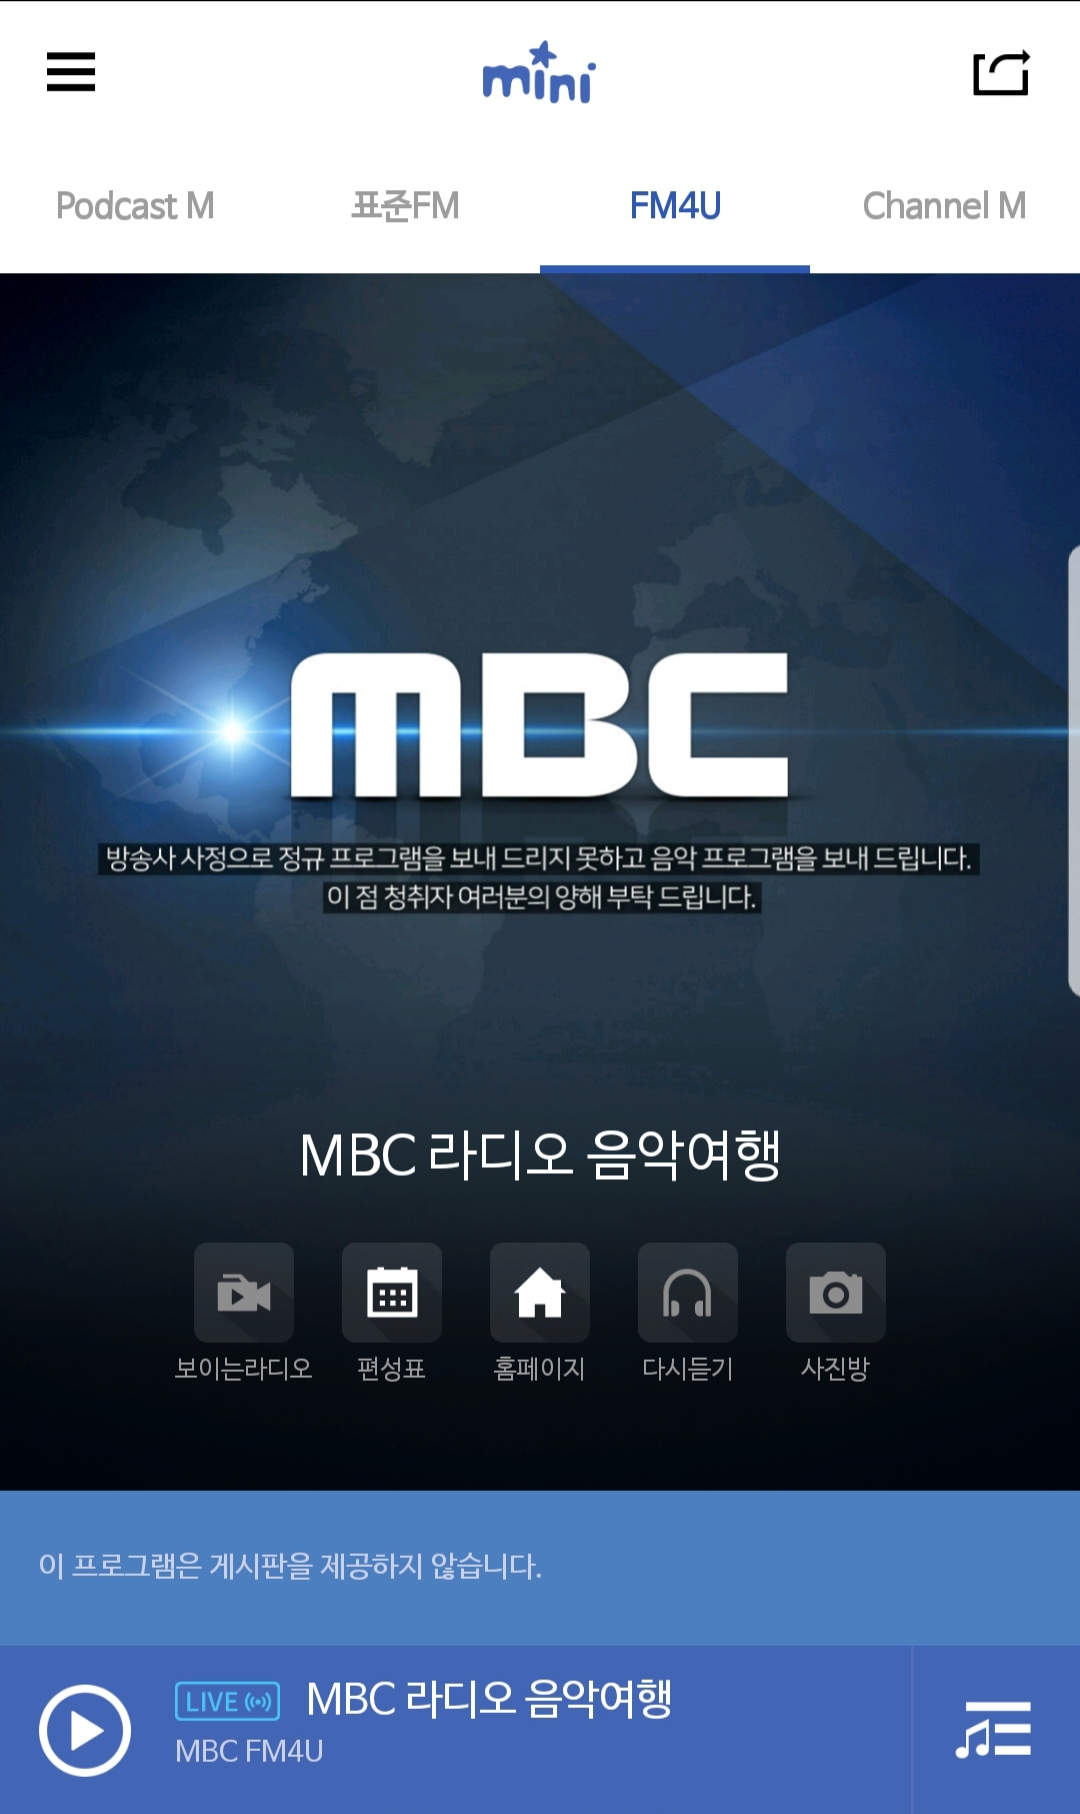 라디오 송출이 중단된 현재 MBC 라디오 어플 '미니'의 모습.